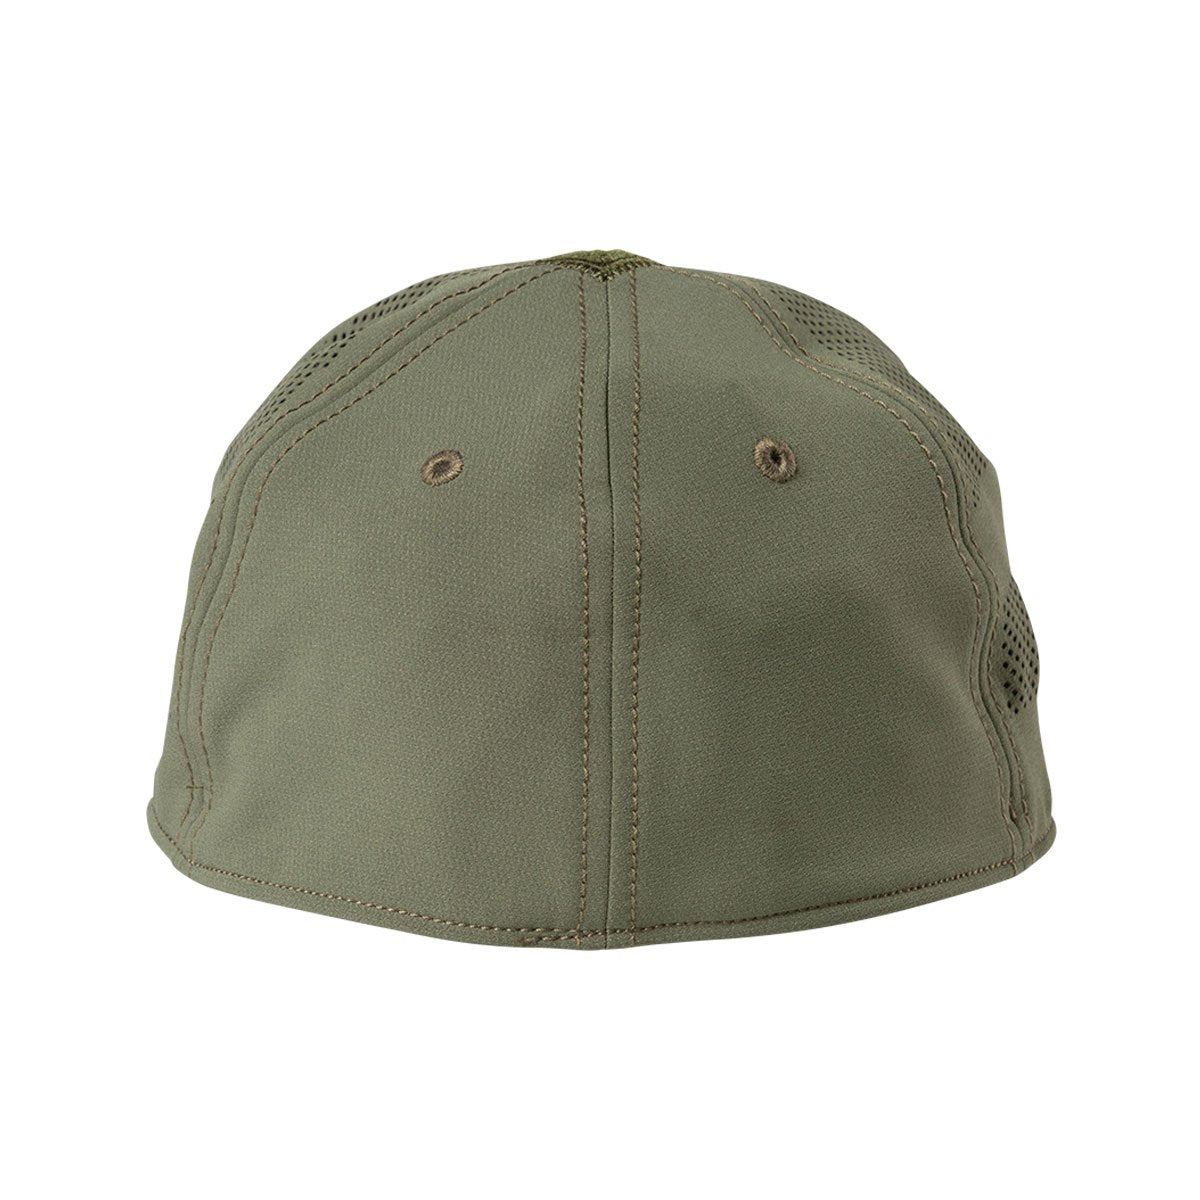 5.11 Tactical Vent-Tac Hat Green Accessories 5.11 Tactical Tactical Gear Supplier Tactical Distributors Australia